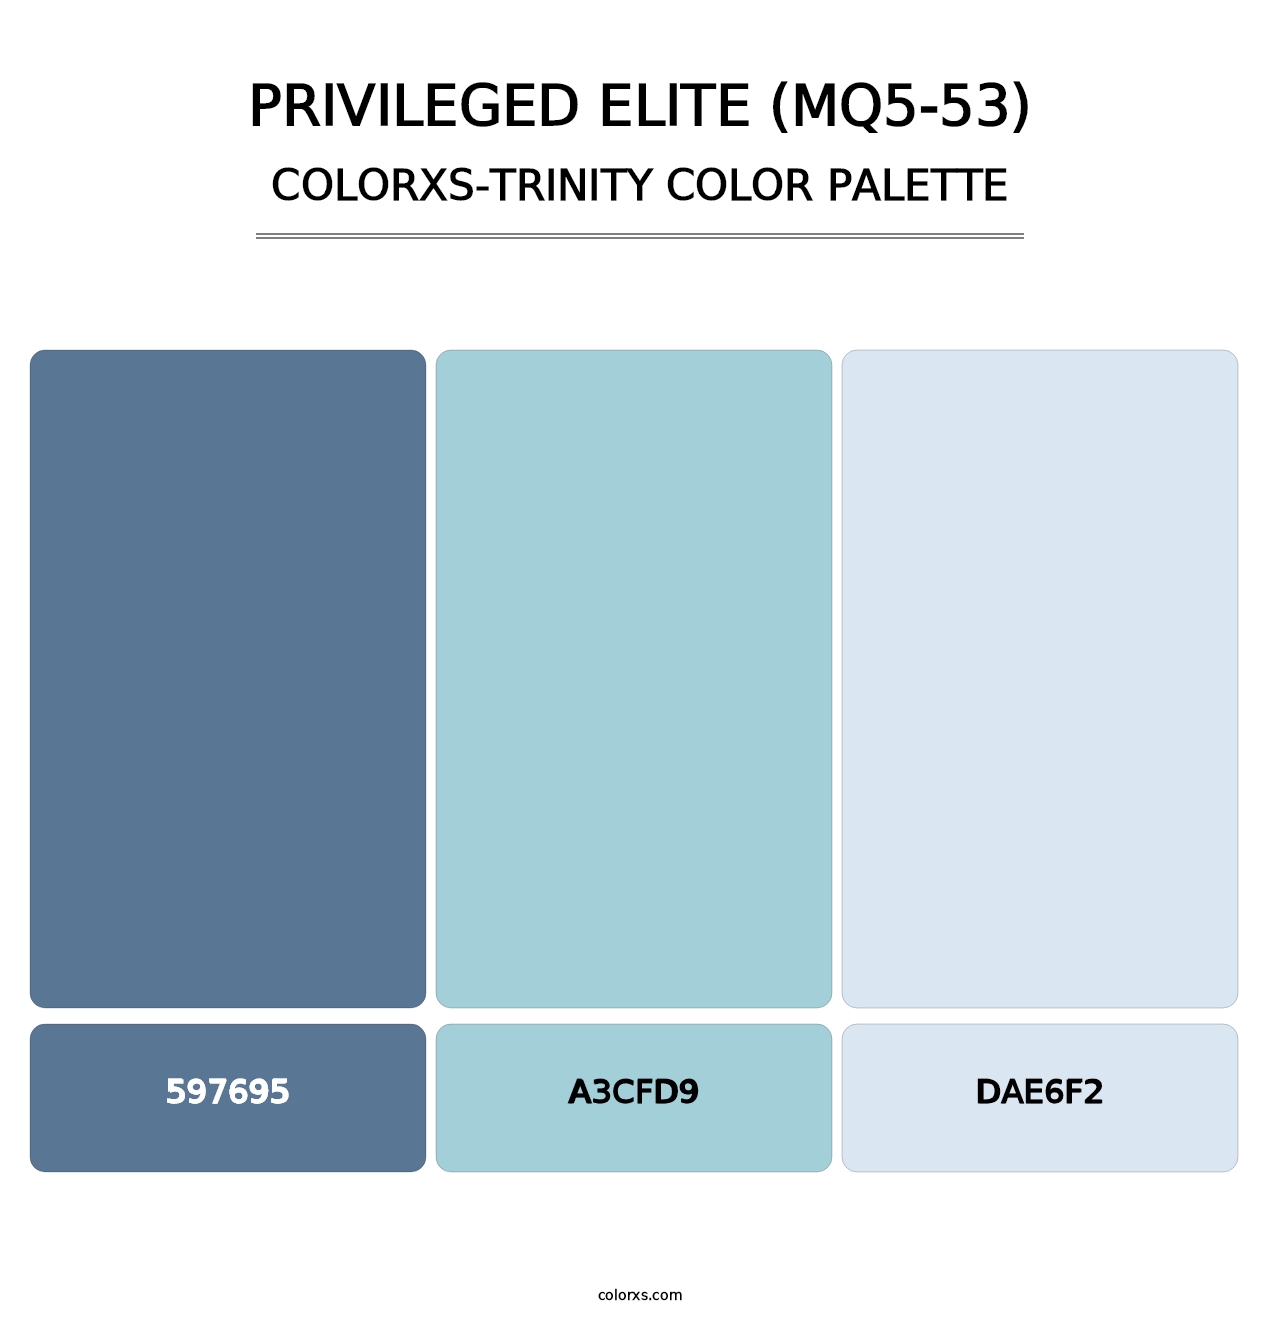 Privileged Elite (MQ5-53) - Colorxs Trinity Palette